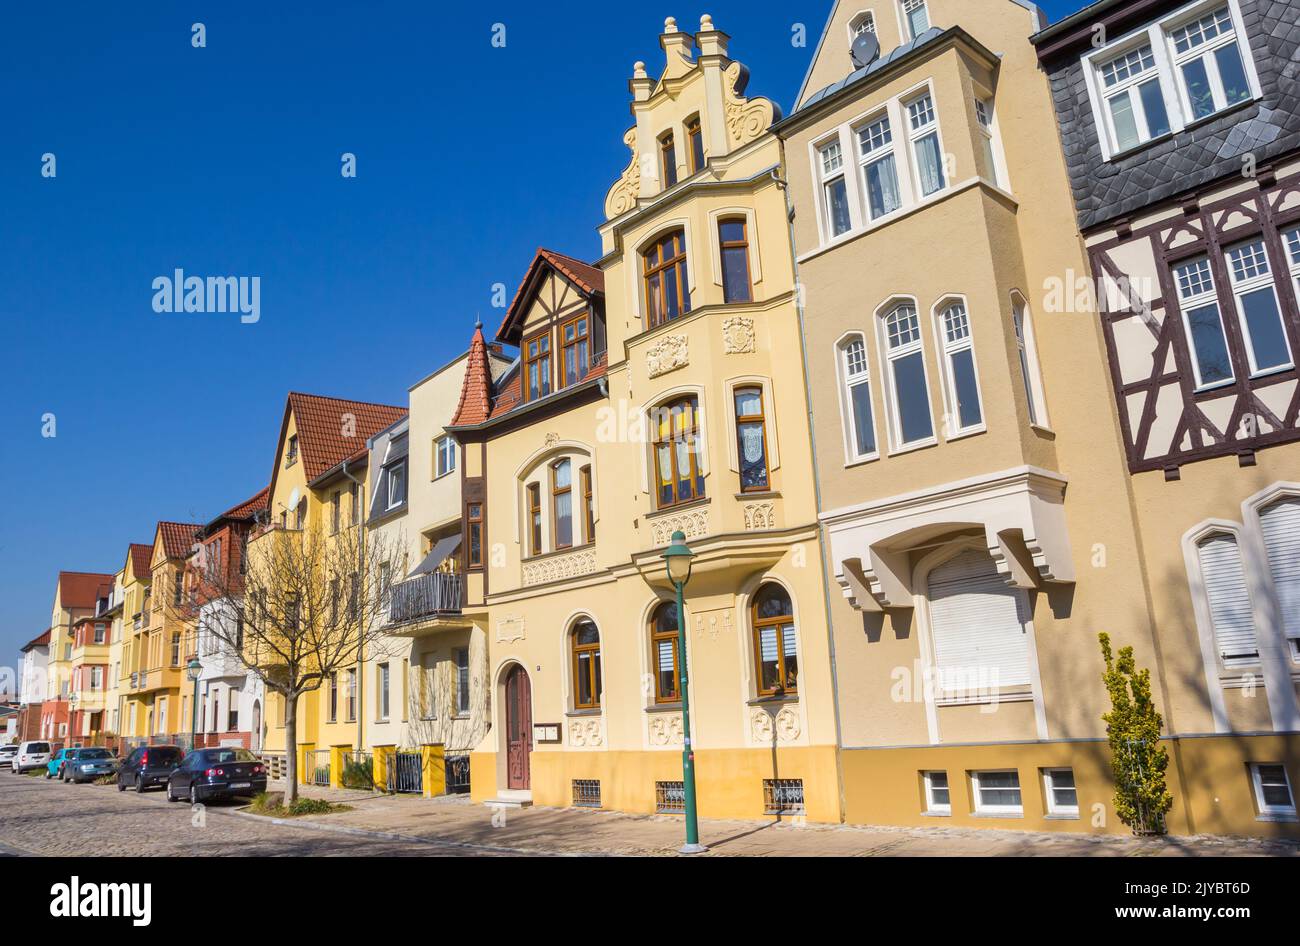 Rue avec maisons colorées dans la ville thermale de Bad Salzelmen, Allemagne Banque D'Images